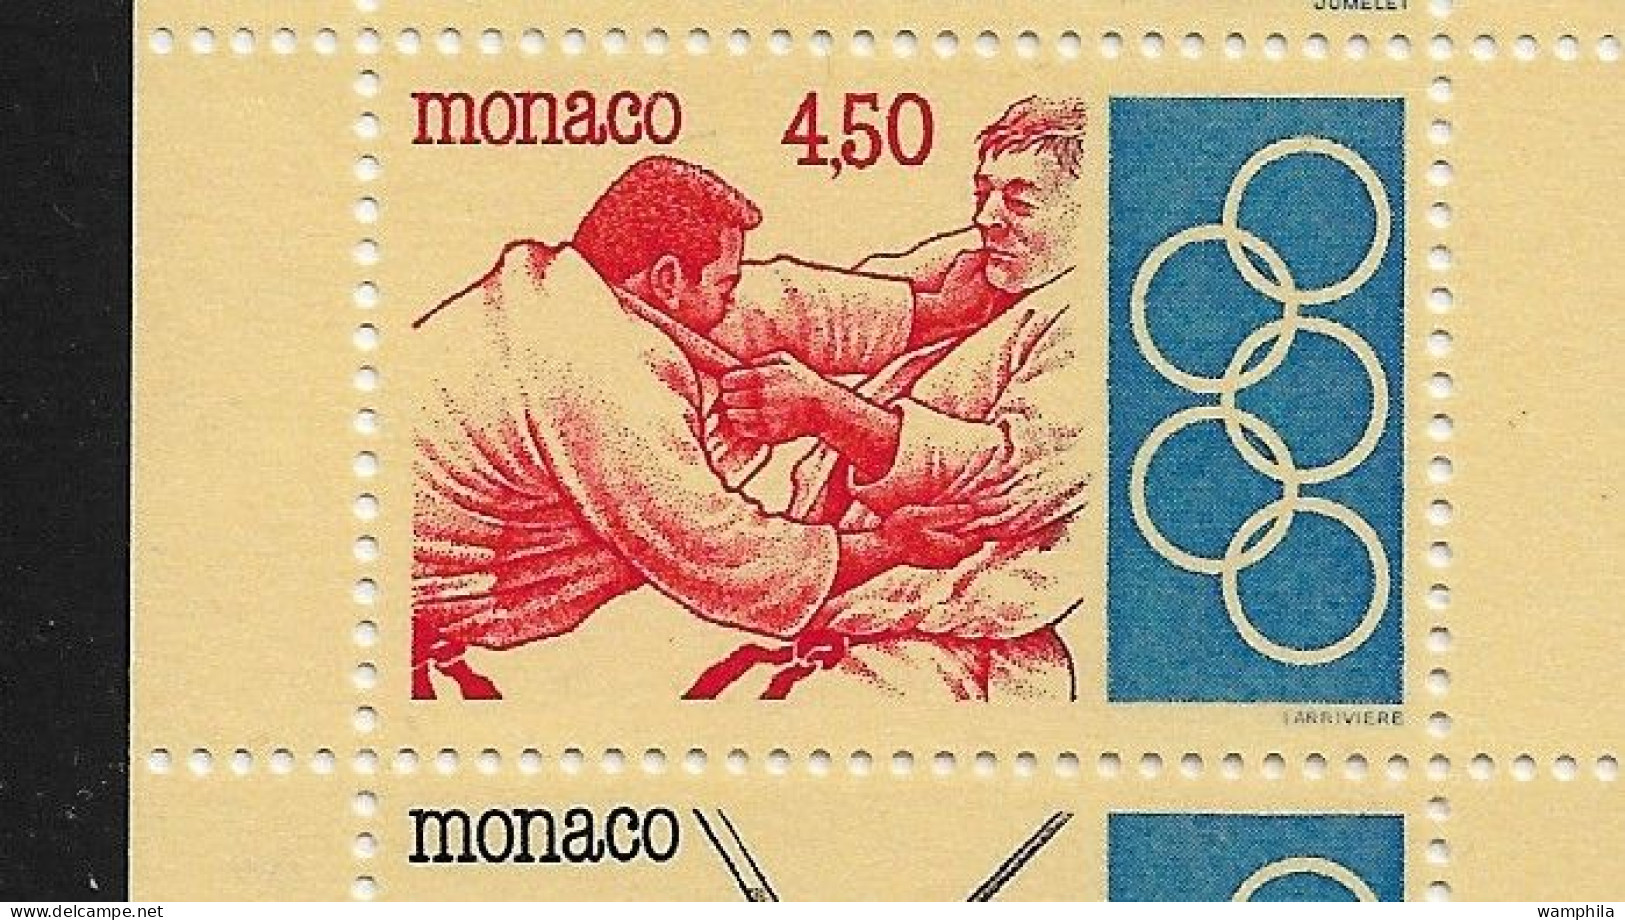 Monaco 1993. Carnet N°11, J.O .Anneaux, Judo, Escrime, Haies, Tir à L'arc, Haltérophilie. - Escrime